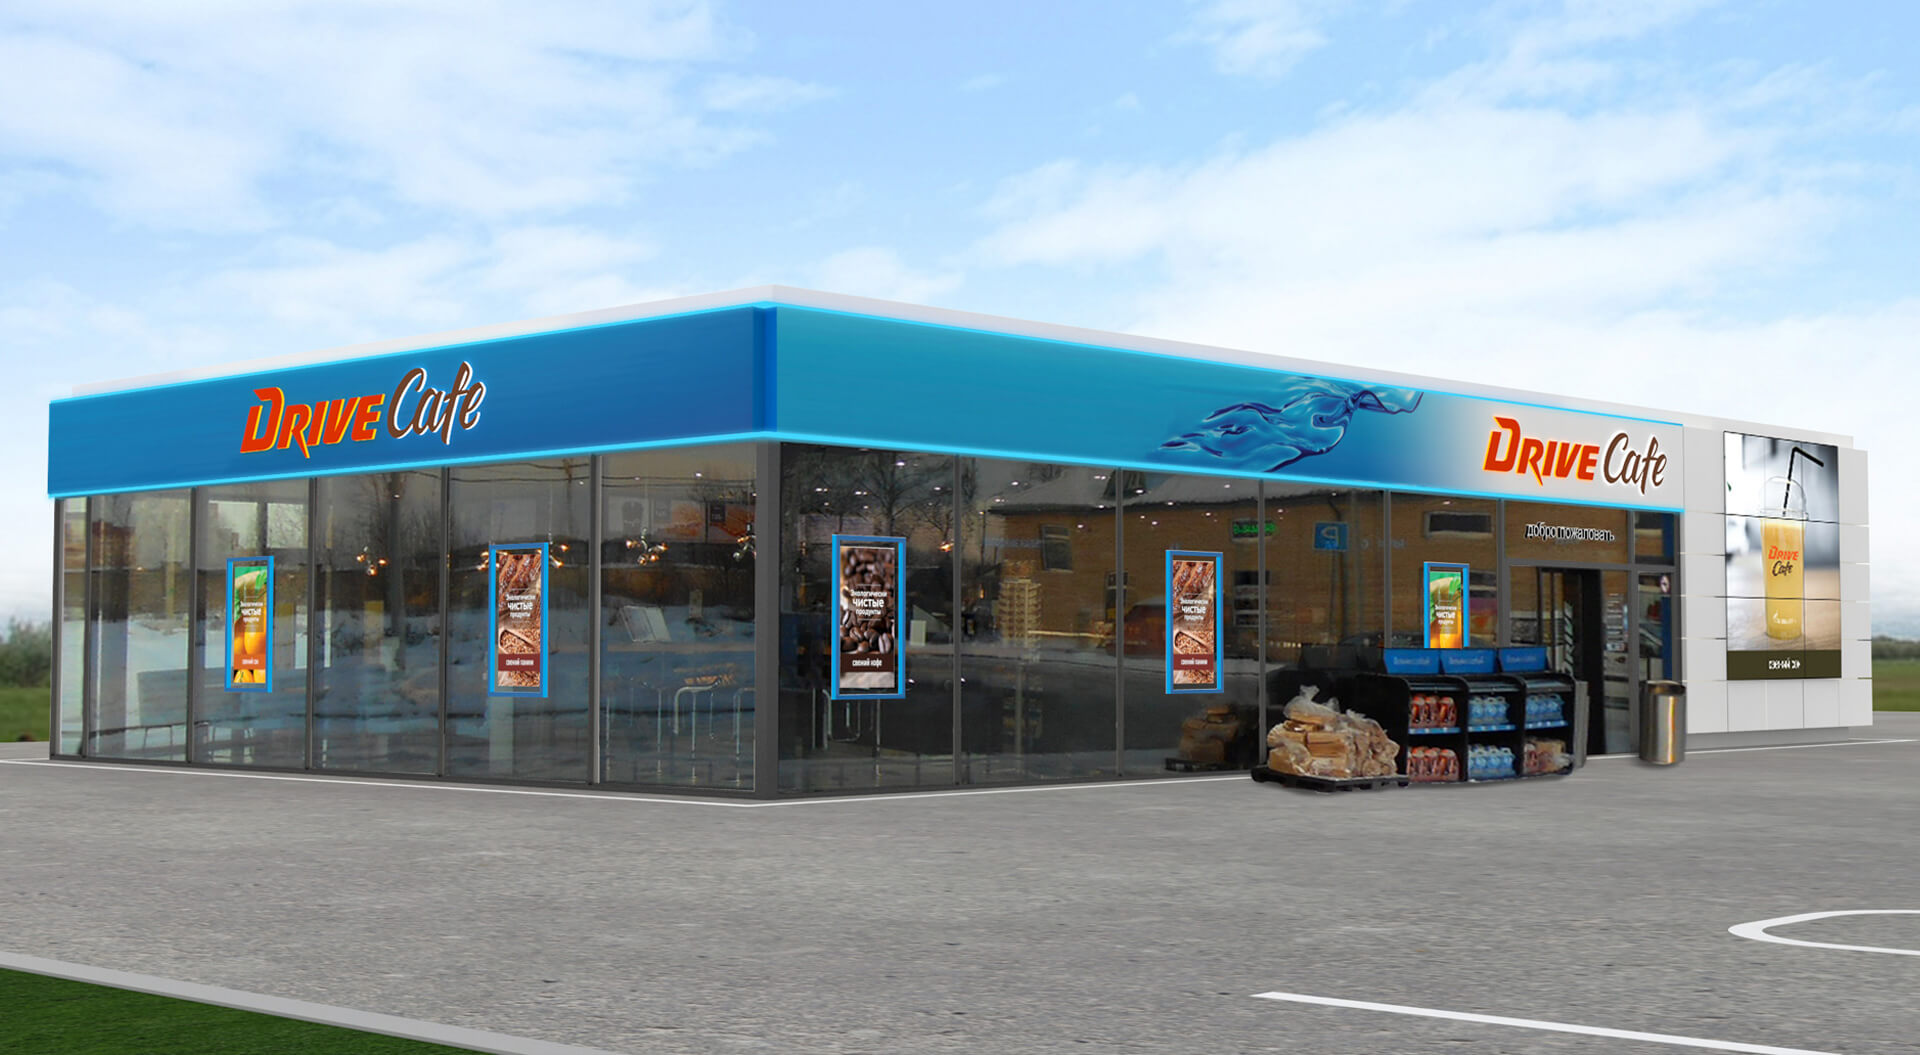 Gazprom Neft Russia Petrol Forecourts rebrand identity for Café Drive convenience store design